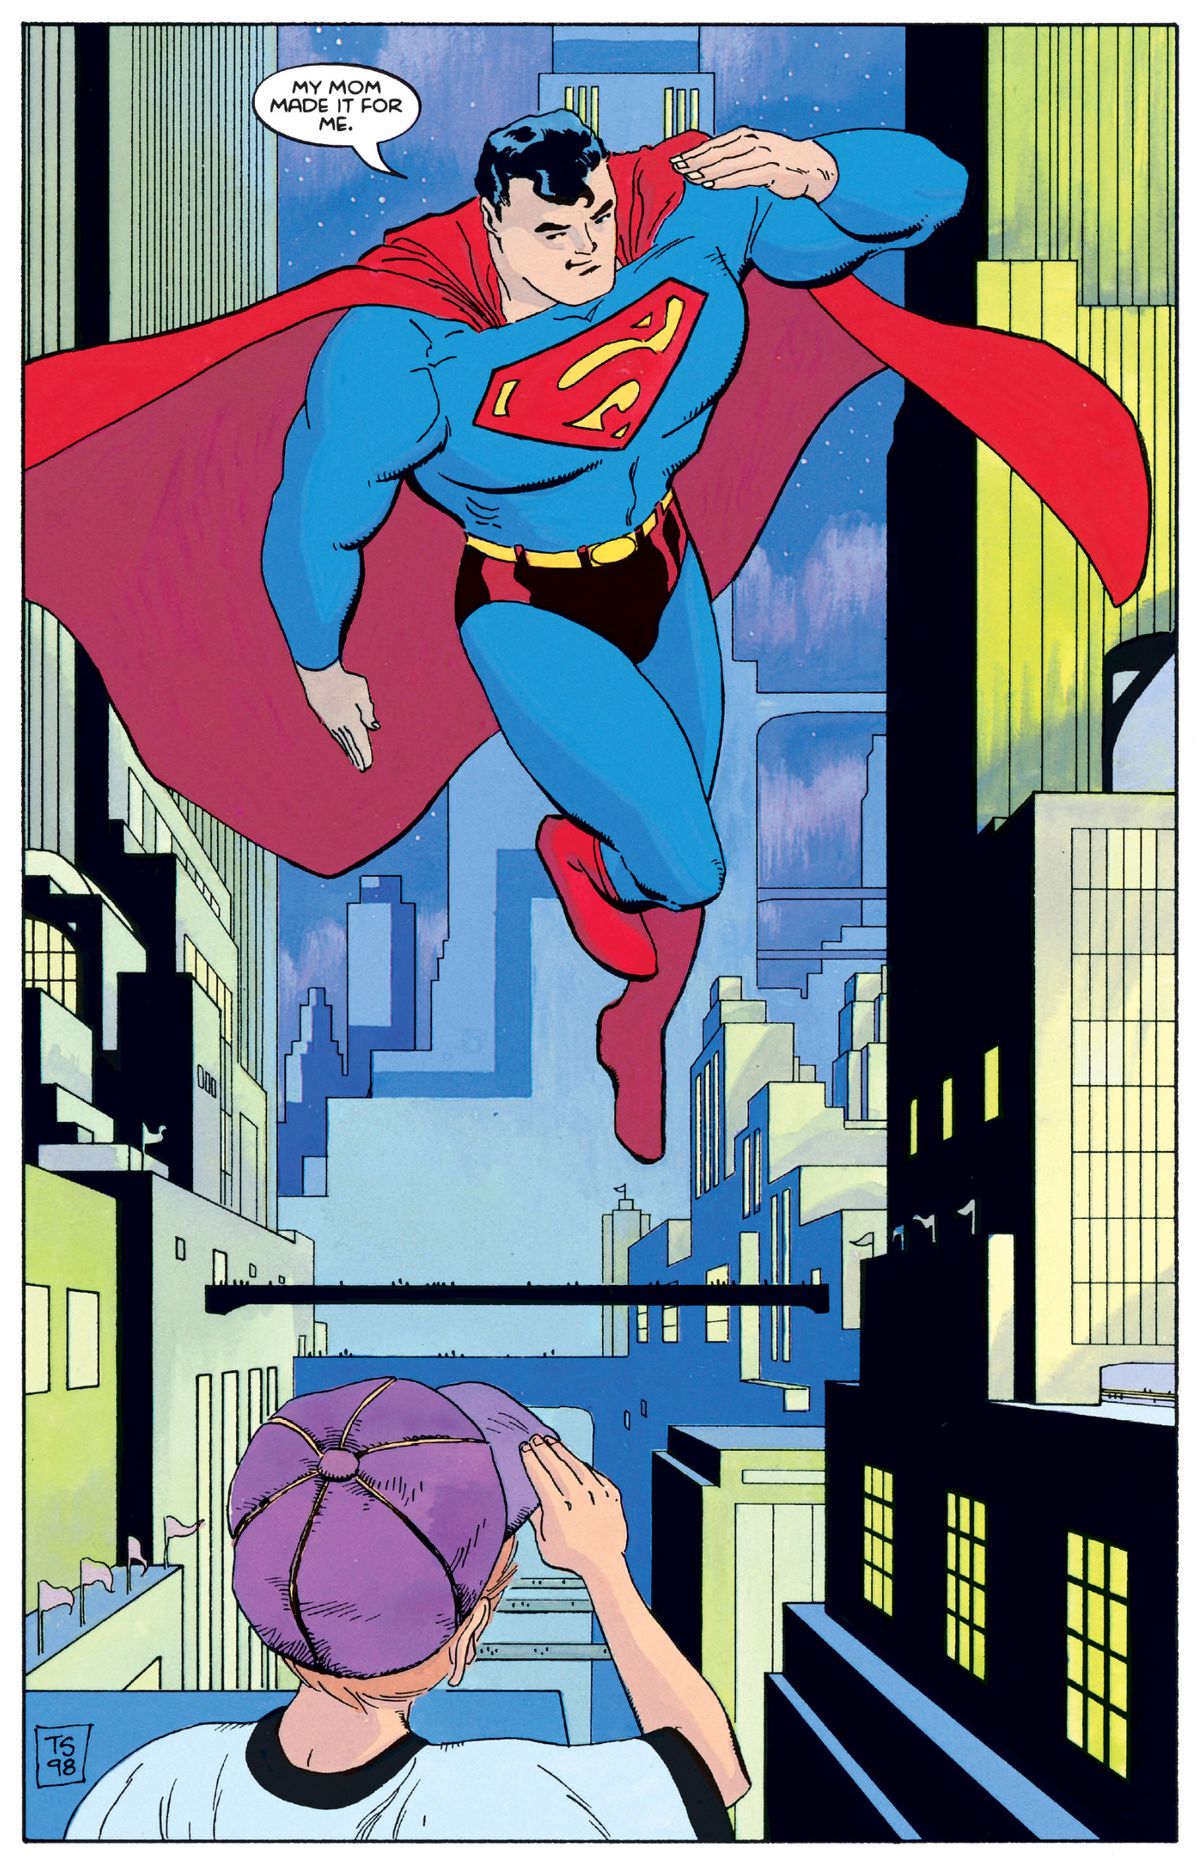 Hoppande i luften hälsar Superman en liten pojke. 